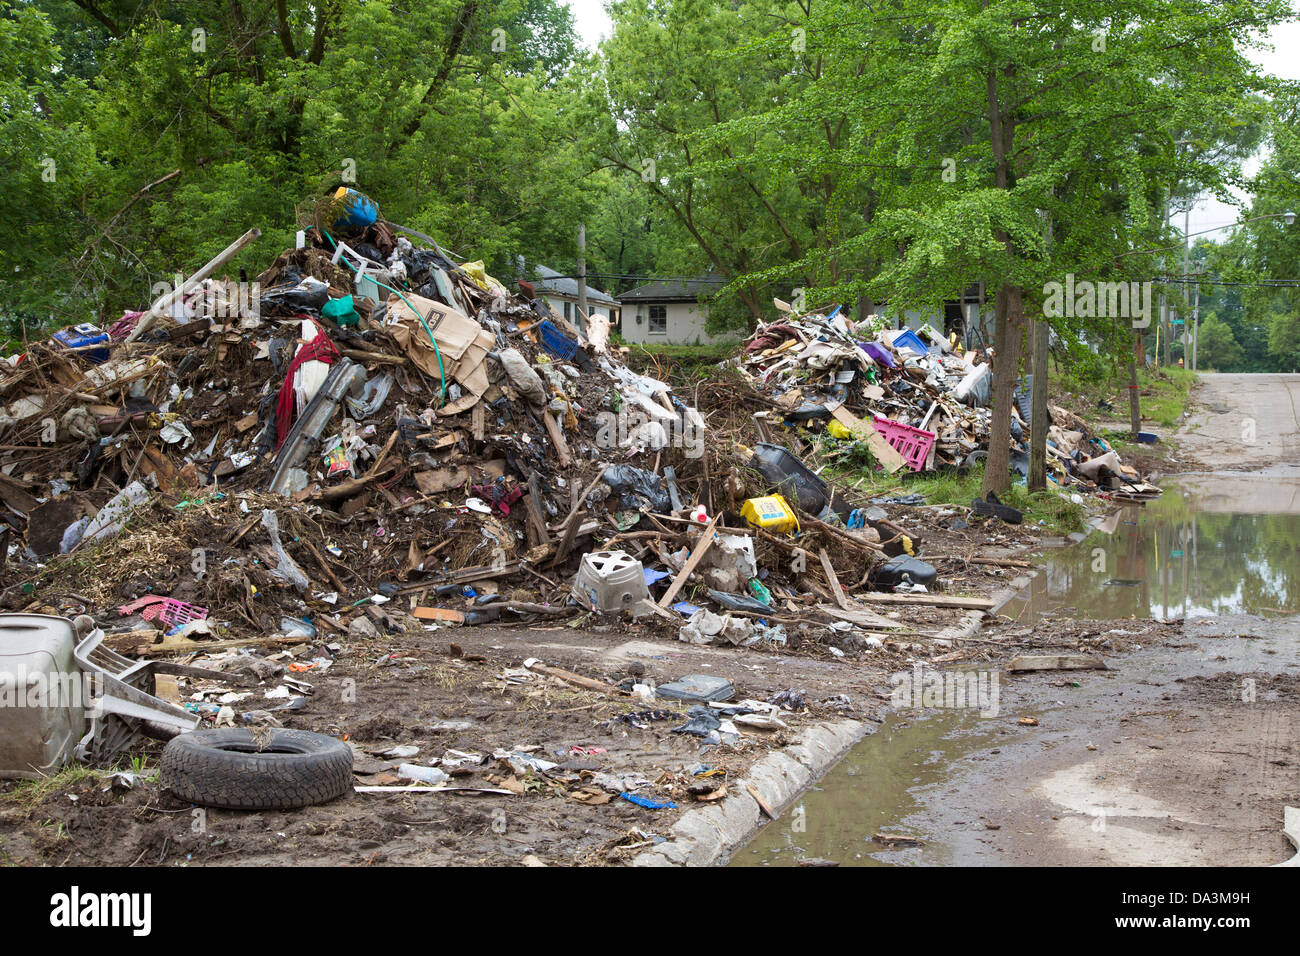 Los montones de basura esperan a disposición como la autoridad de Blight Detroit limpia 14 cuadras del barrio Brightmoor. Foto de stock